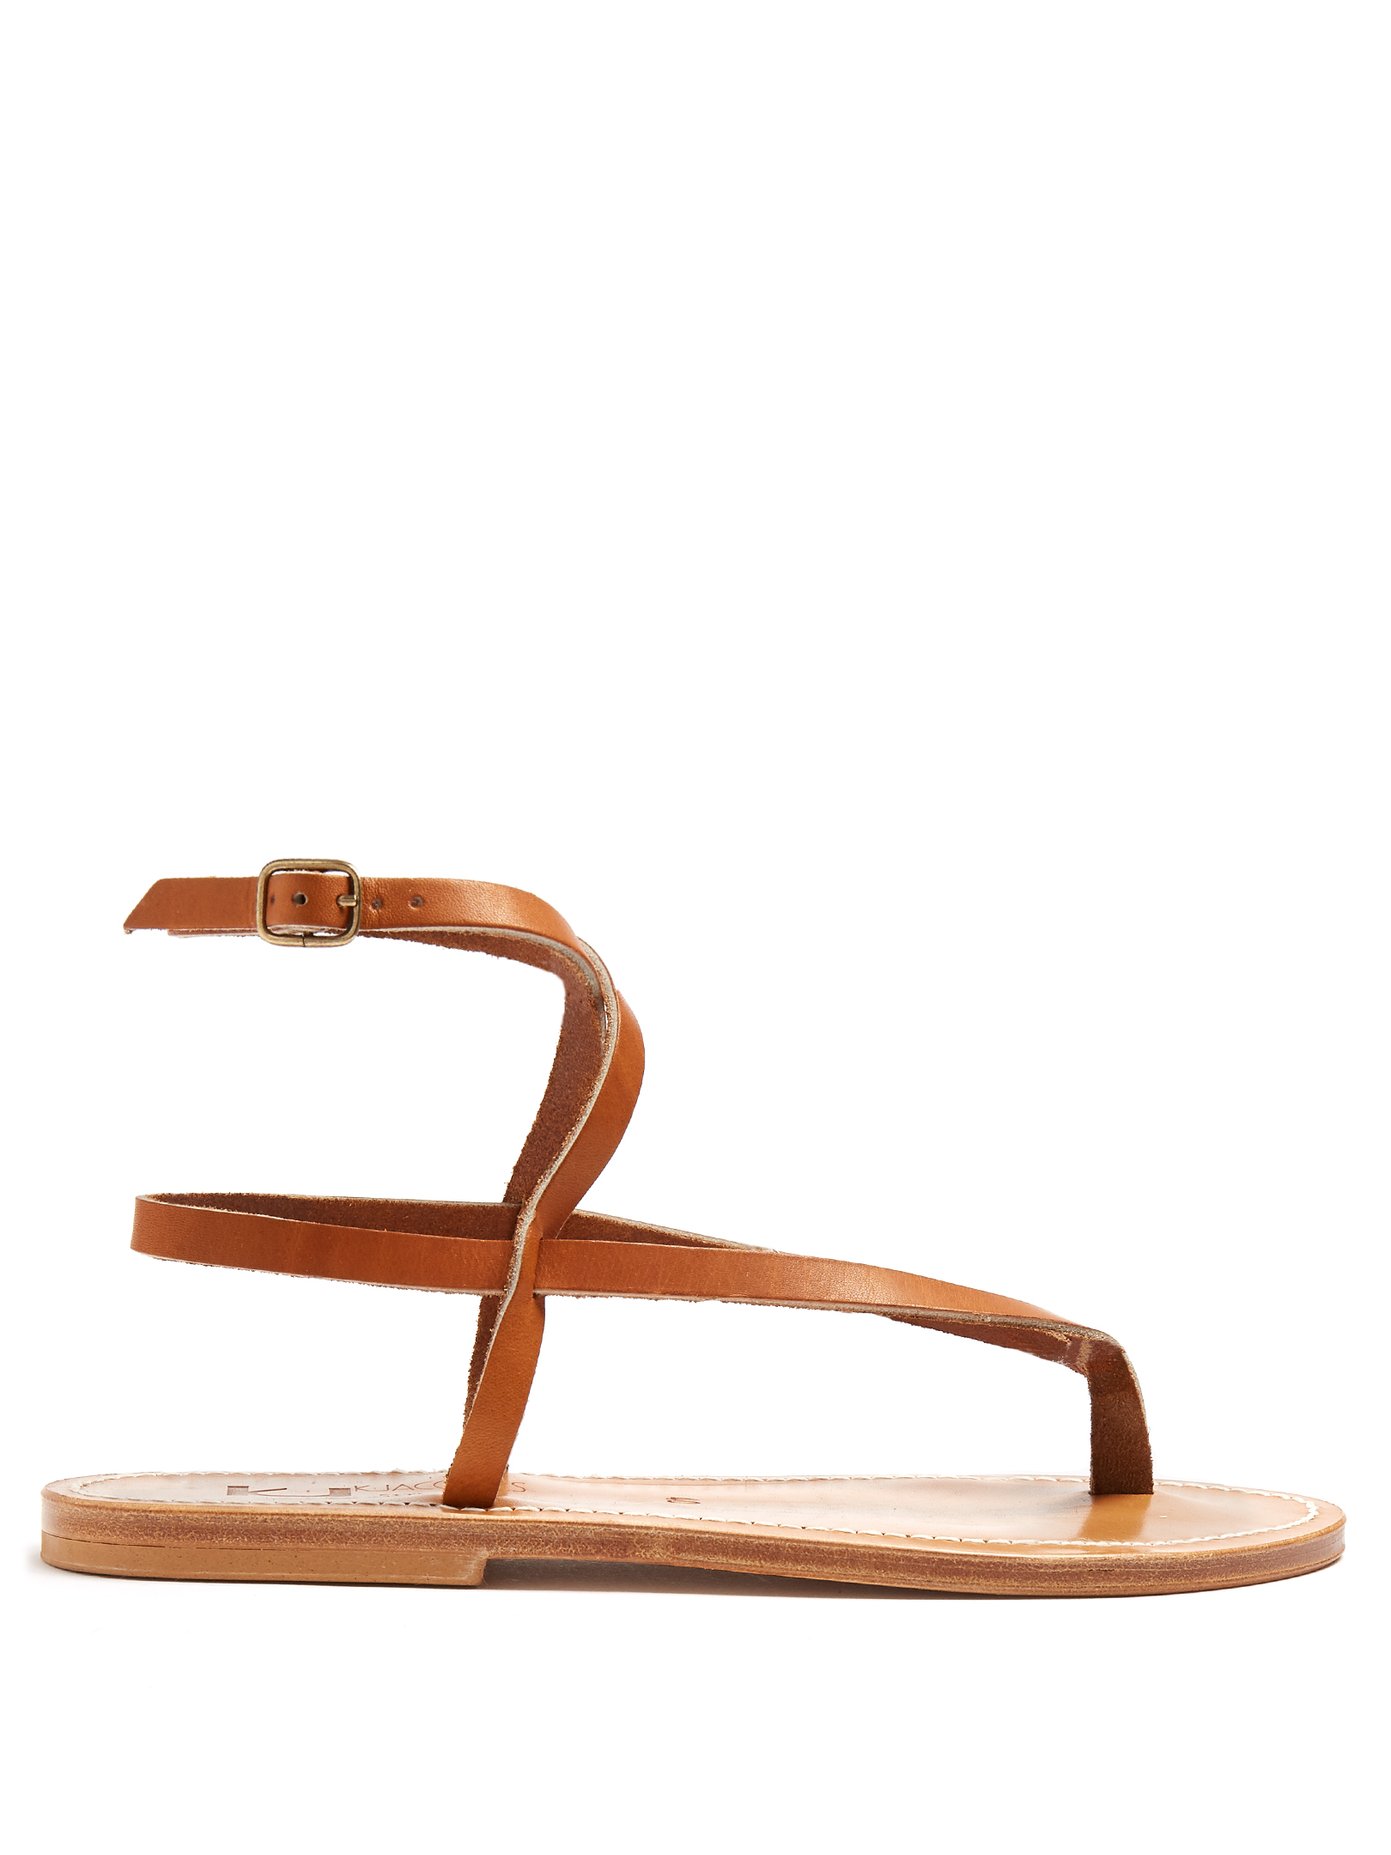 Delta wraparound leather sandals | K 